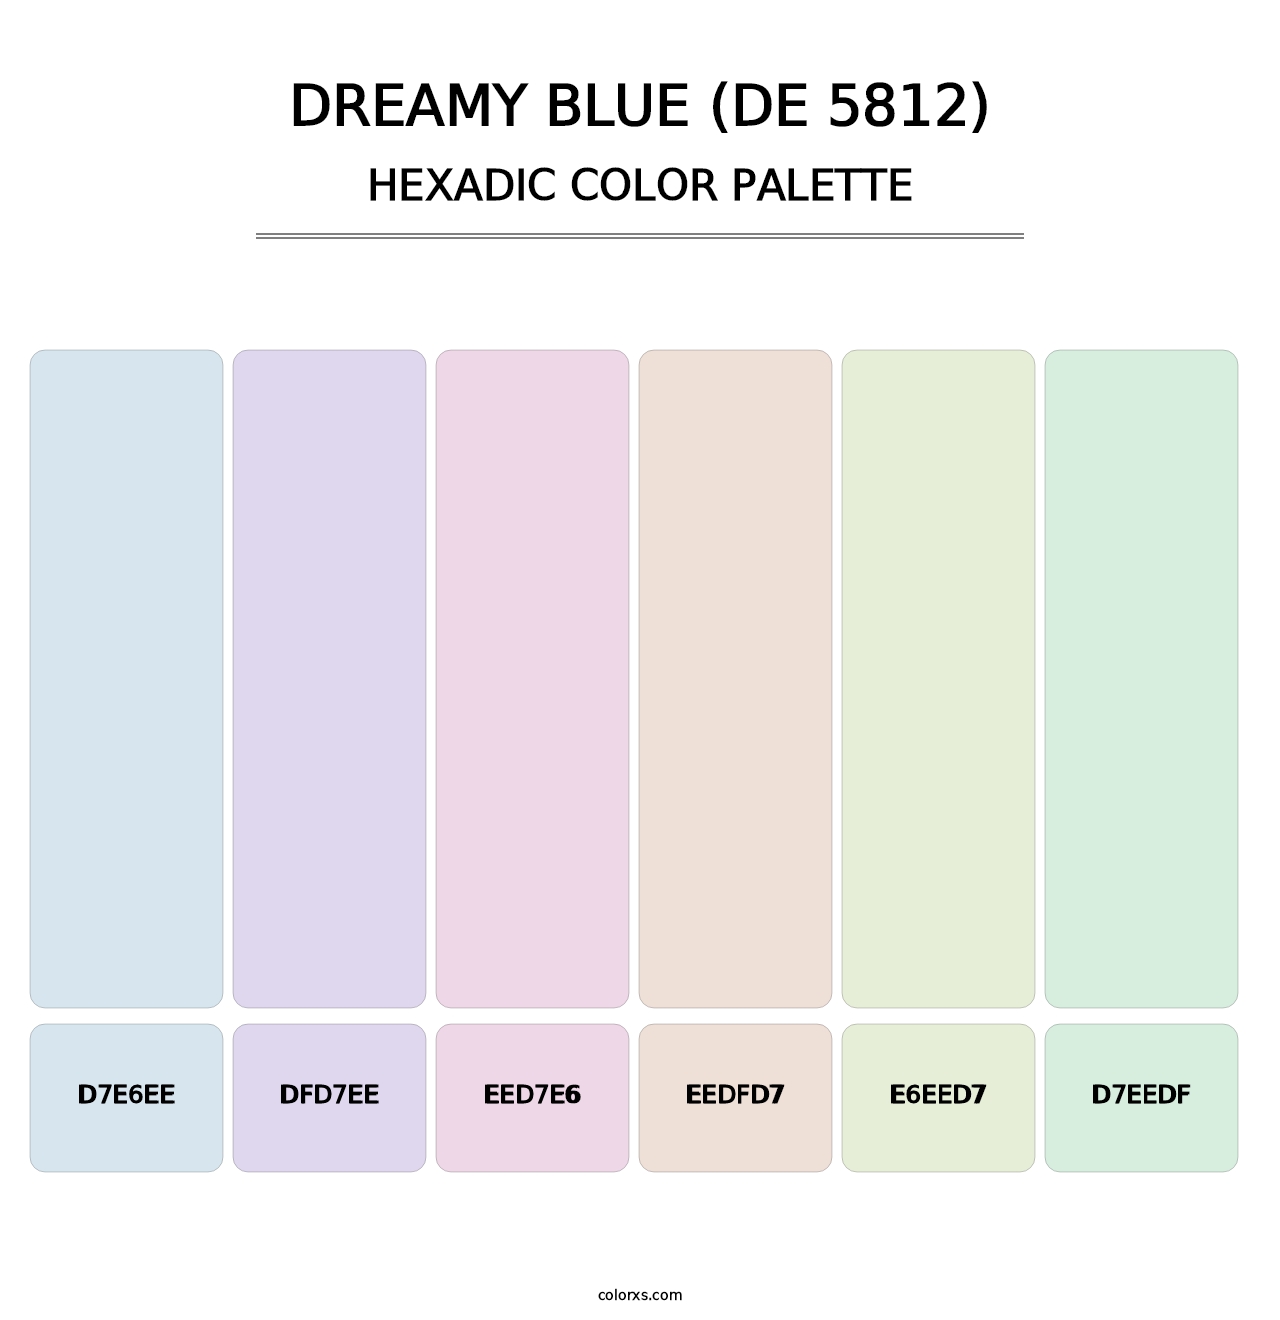 Dreamy Blue (DE 5812) - Hexadic Color Palette